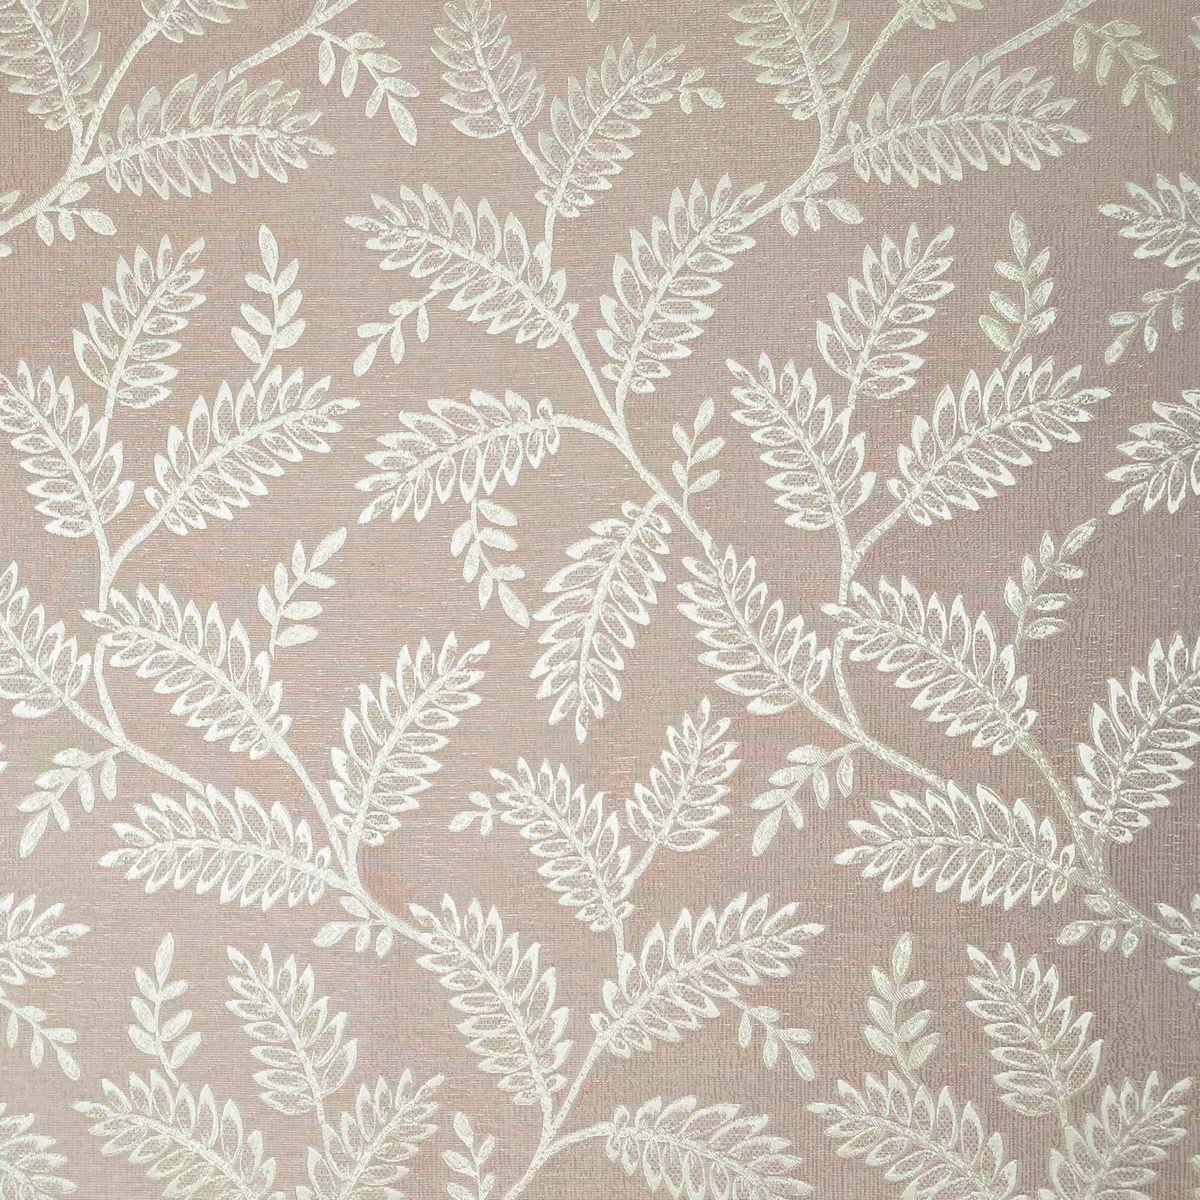 Winterbourne Blush Fabric by Chatham Glyn